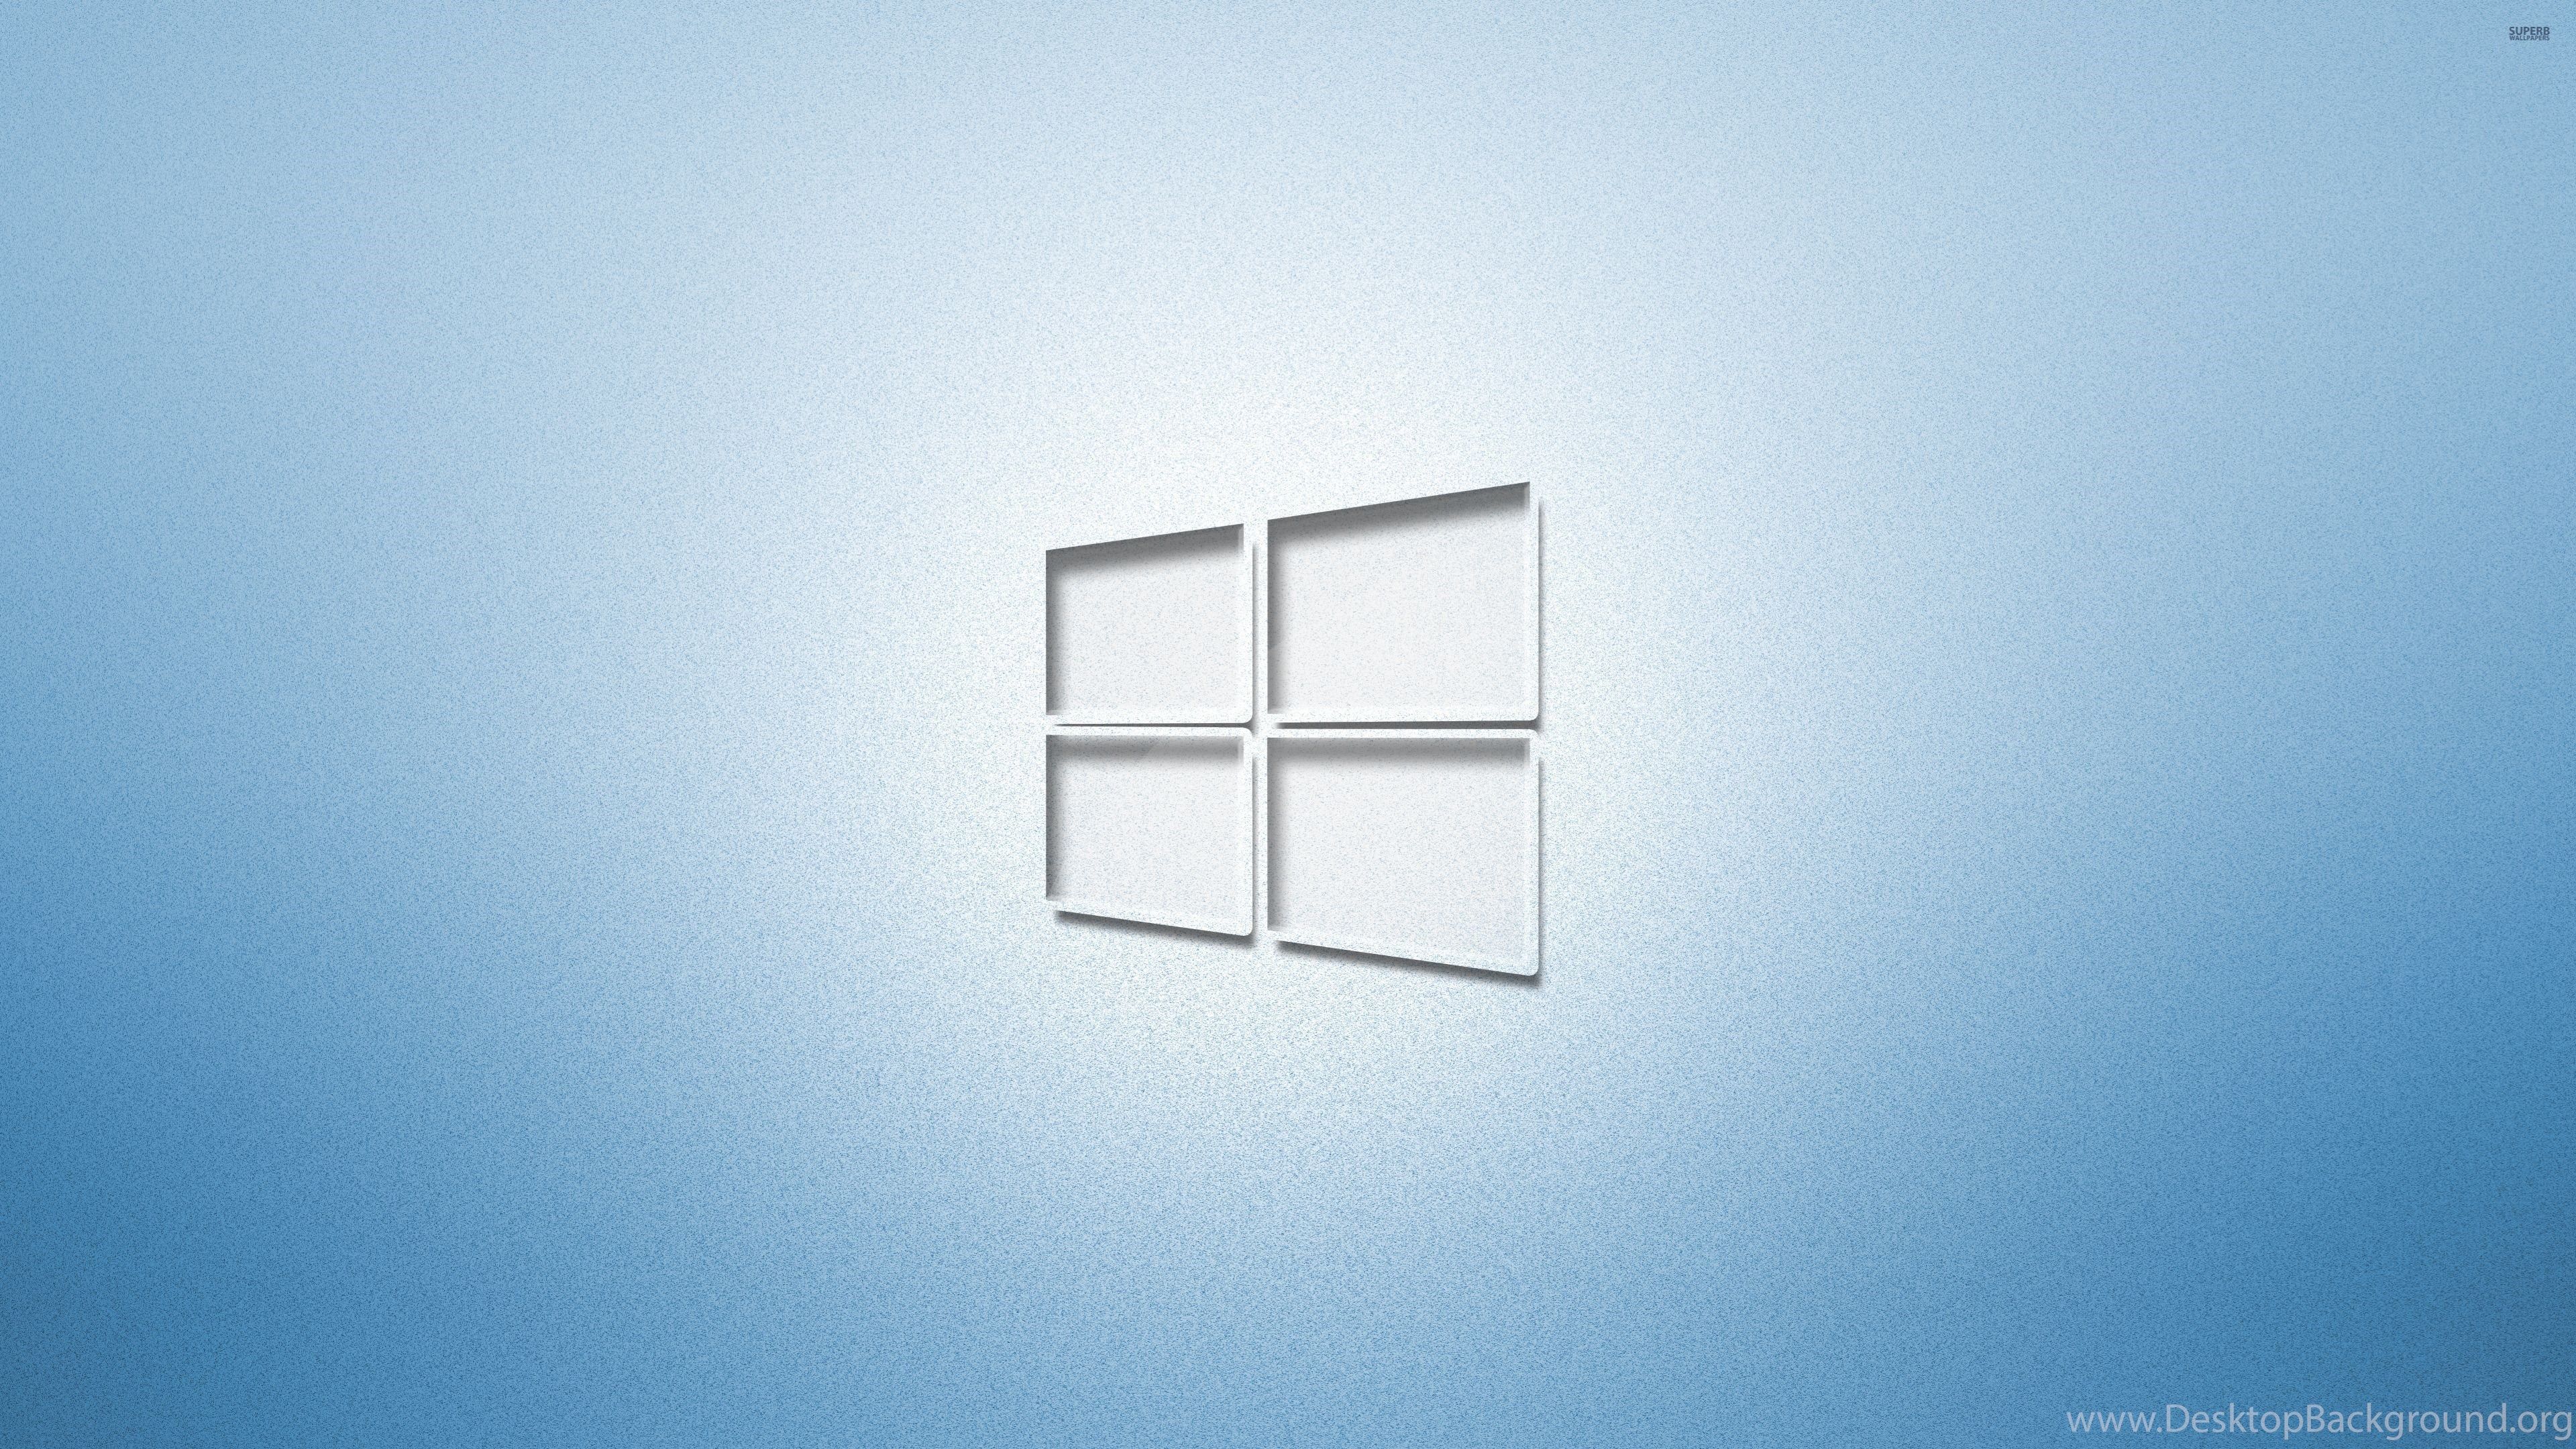 Glass Windows 10 On Light Blue Wallpaper Computer Wallpaper. Desktop Background